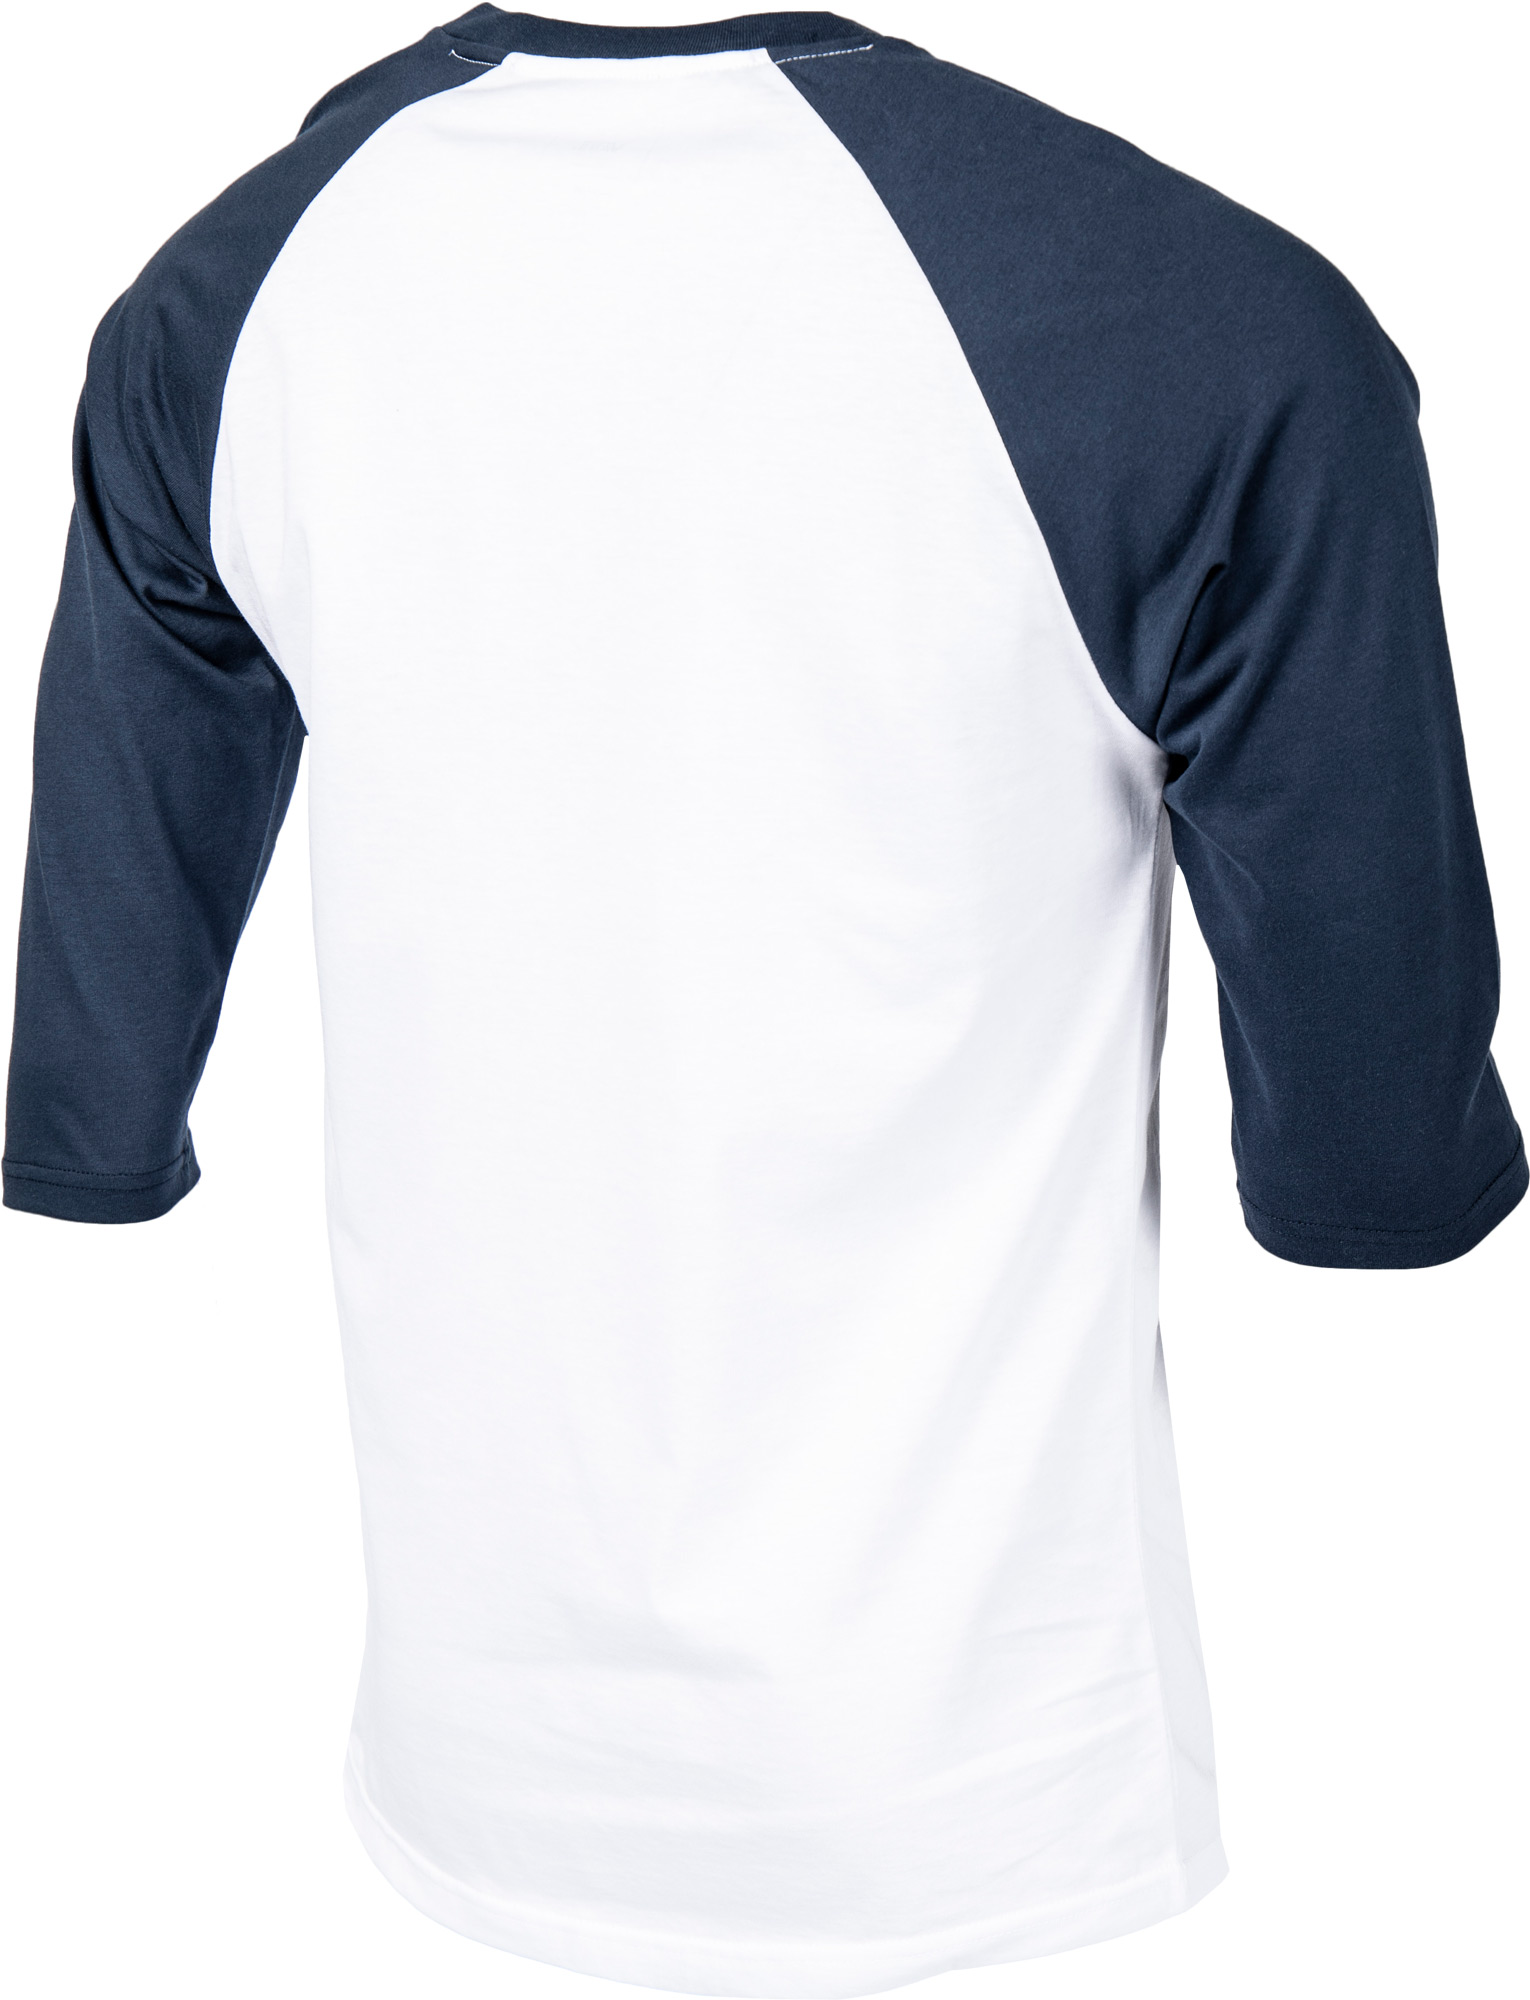 Men’s 3/4 sleeve T-shirt